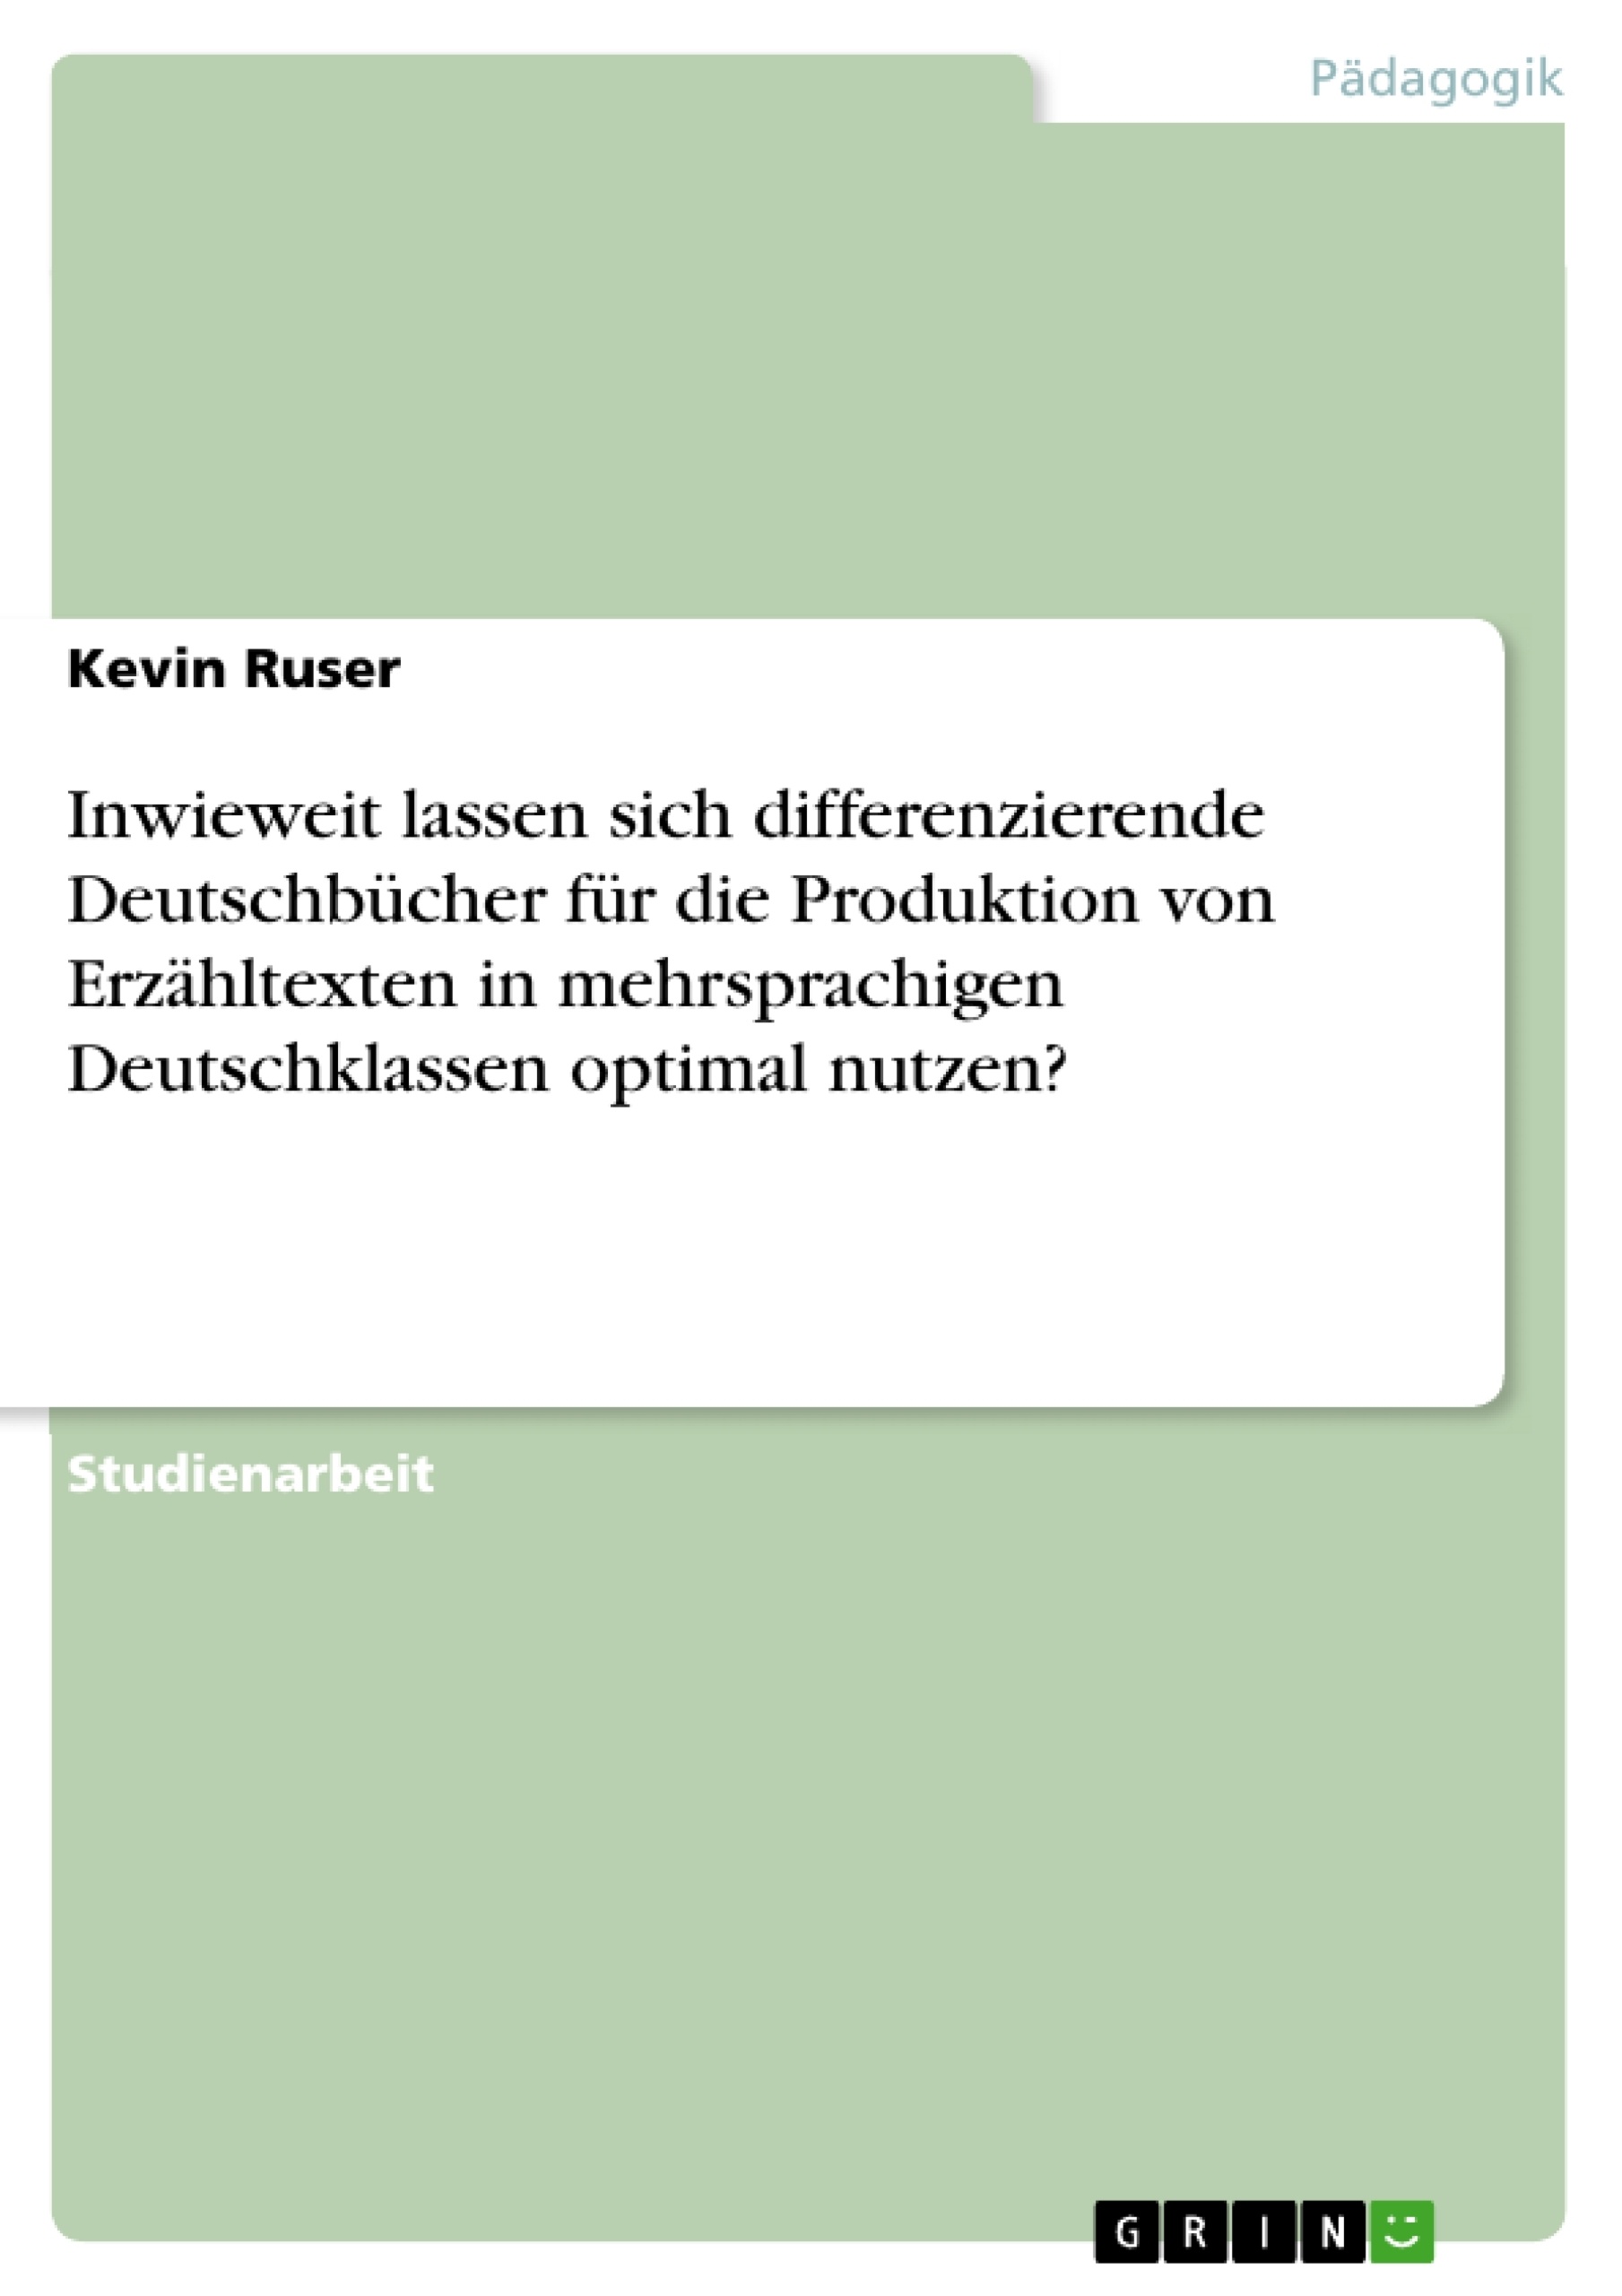 Título: Inwieweit lassen sich differenzierende Deutschbücher für die Produktion von Erzähltexten in mehrsprachigen Deutschklassen optimal nutzen?